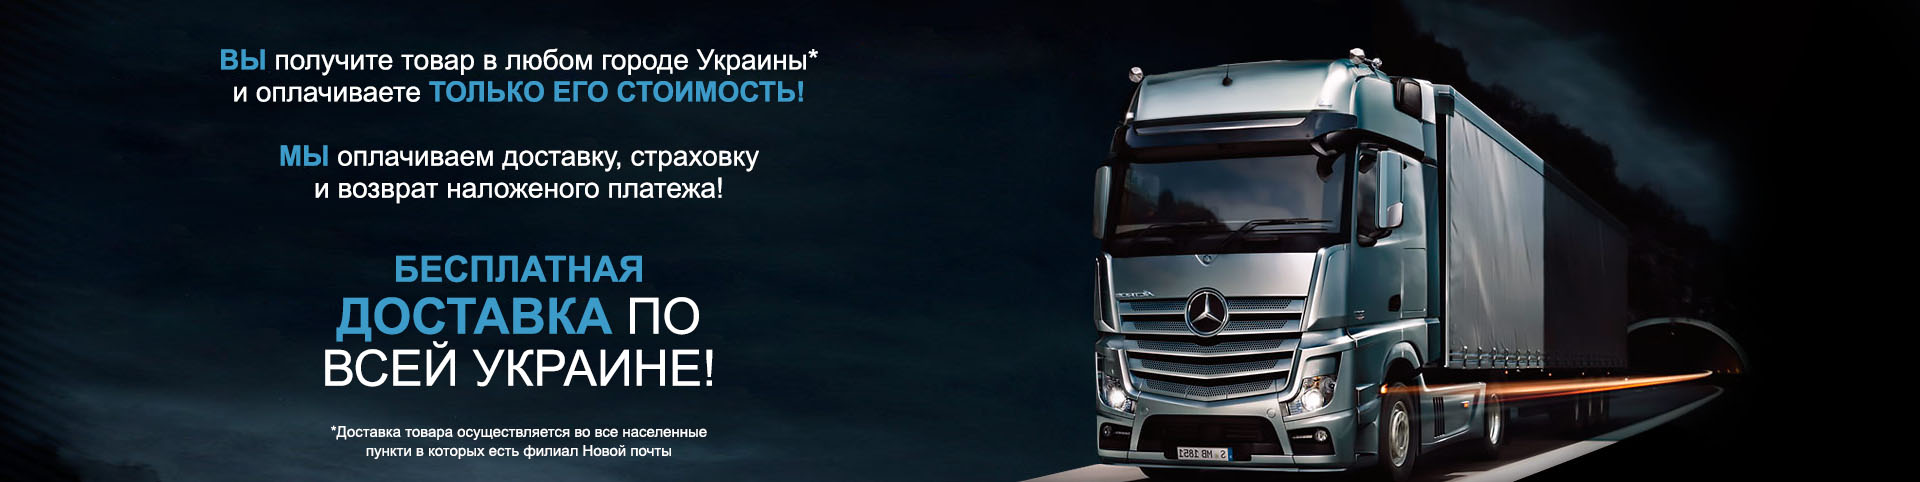 Заказывайте товары с бесплатной доставкой по Украине!